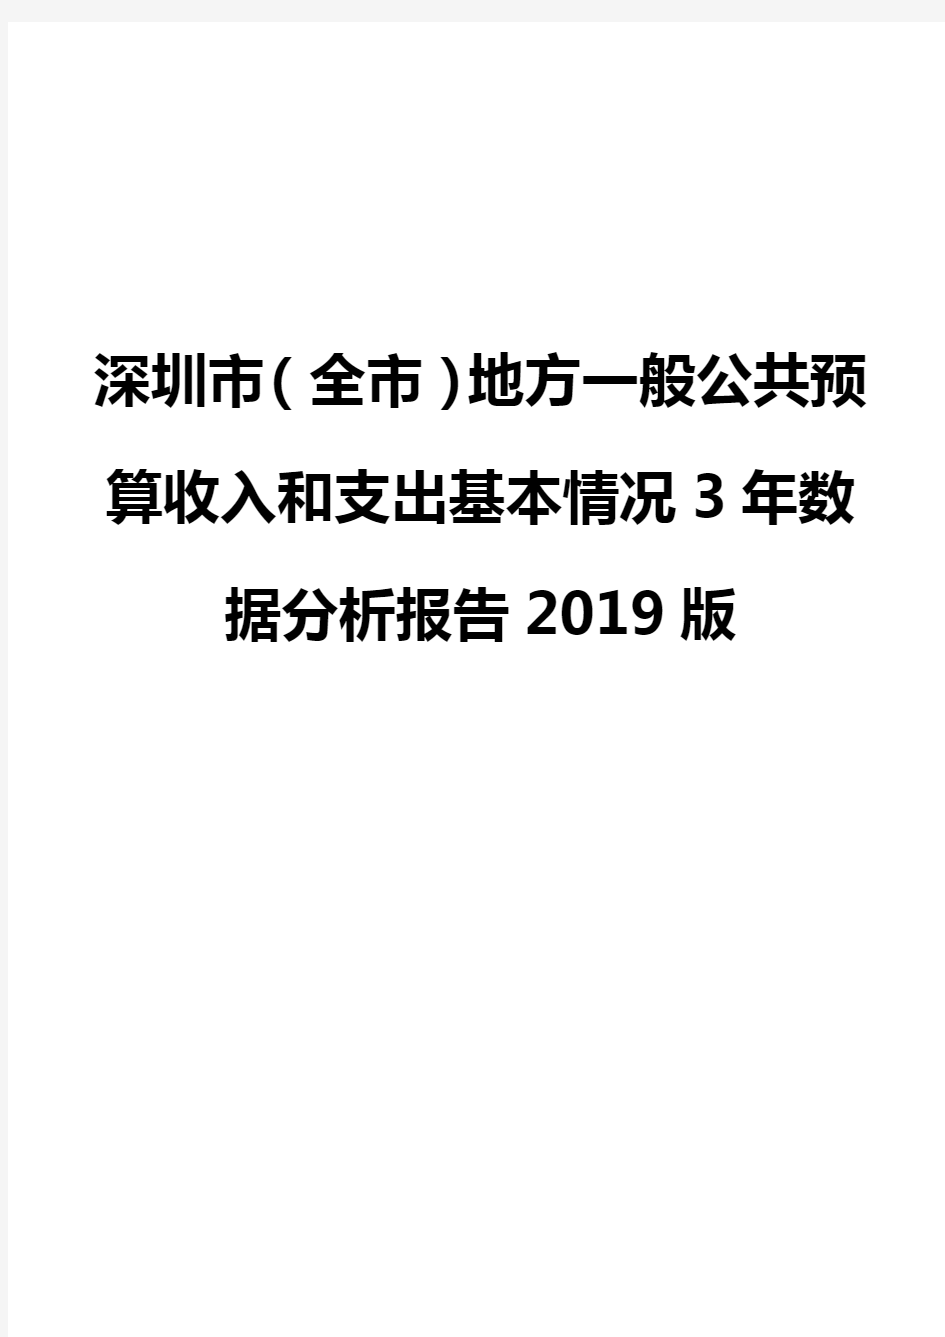 深圳市(全市)地方一般公共预算收入和支出基本情况3年数据分析报告2019版